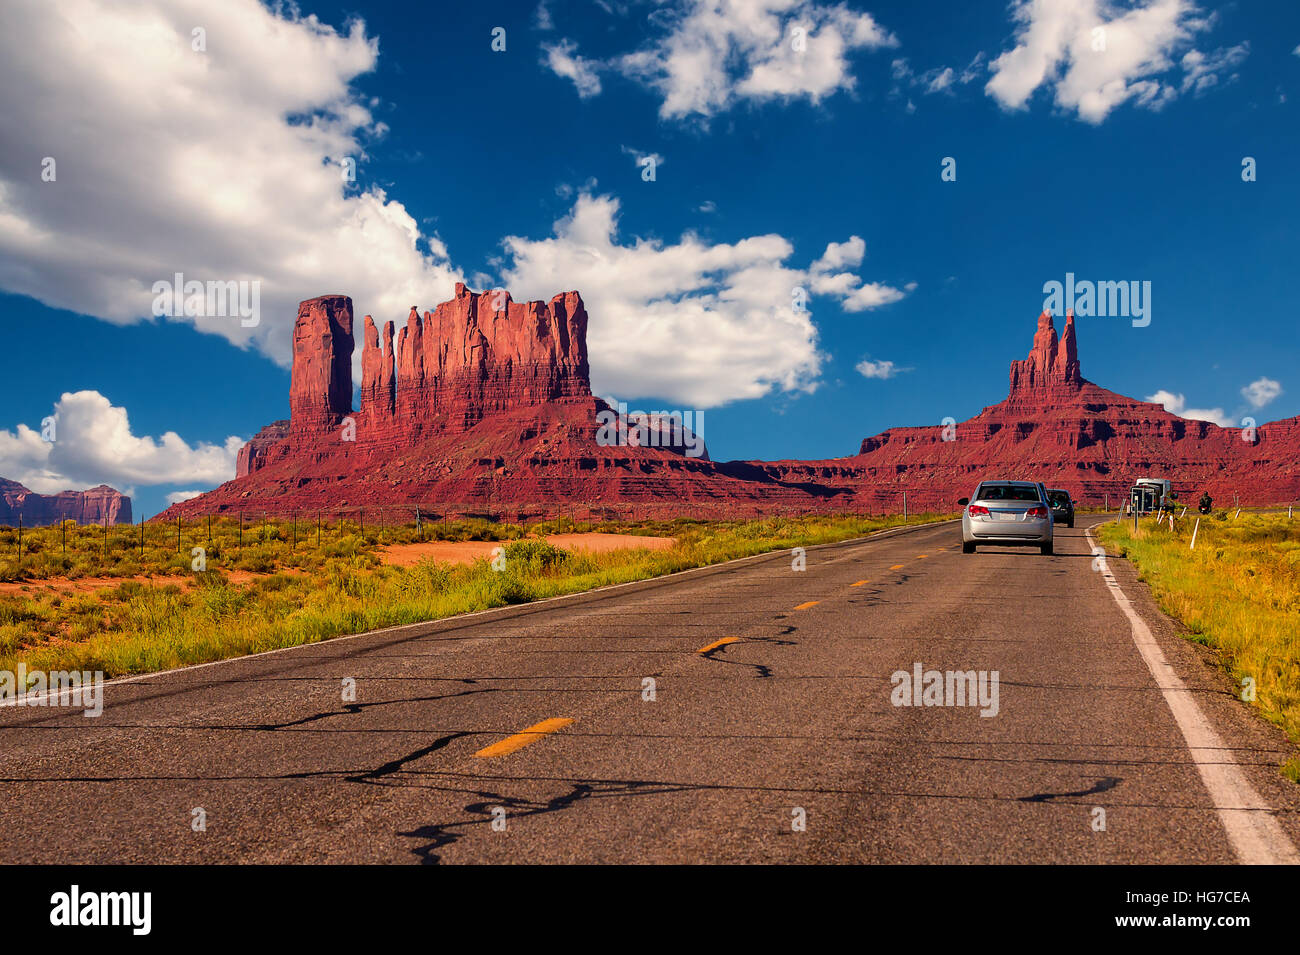 In autostrada in Monument Valley, Utah / Arizona, Stati Uniti d'America - la foto con il trasporto su strada e di automobili la guida verso le colline. Foto Stock